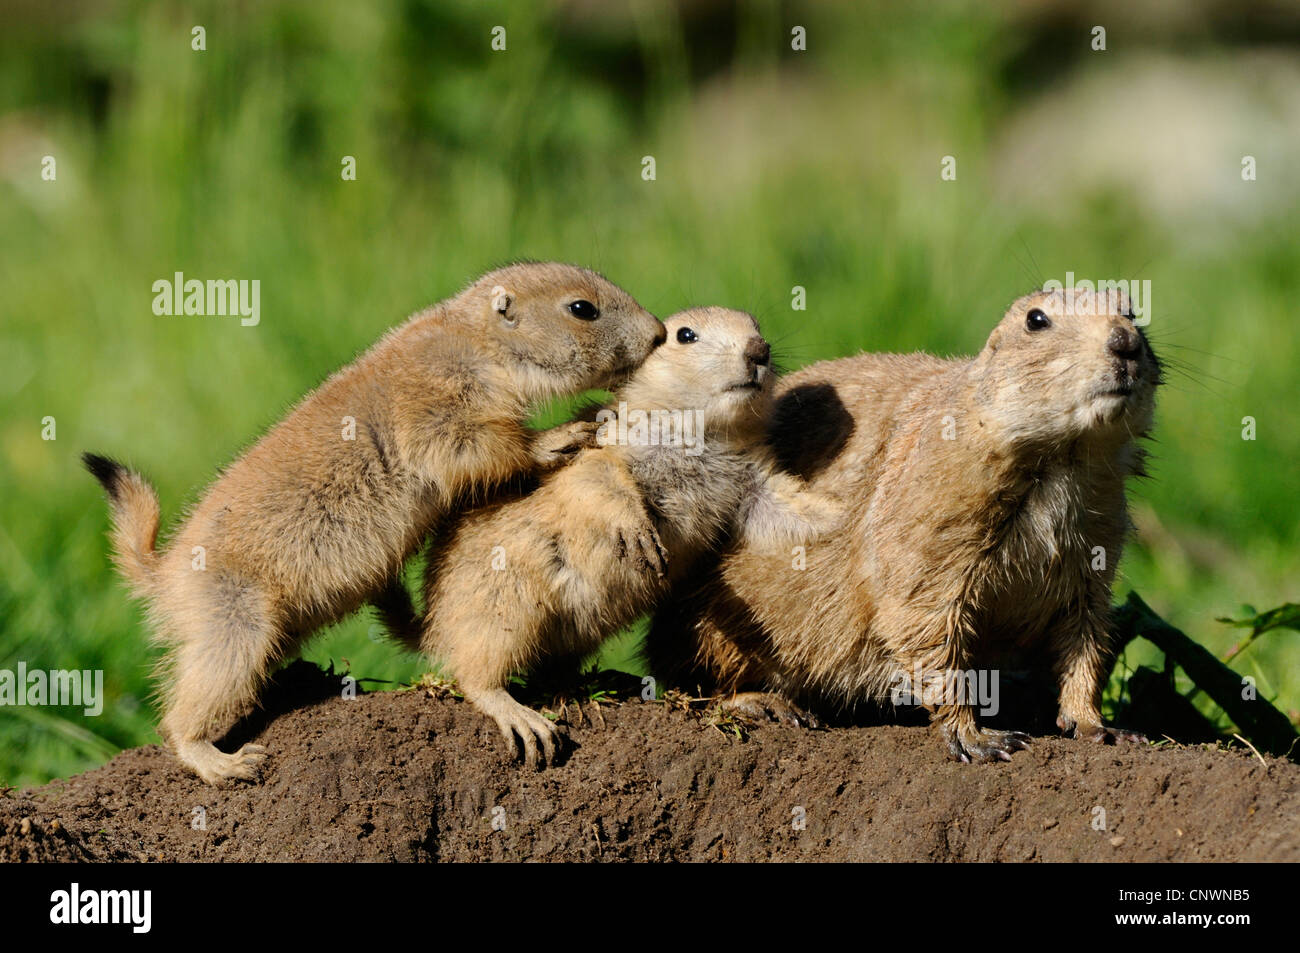 schwarz-angebundene Präriehund, Plains Präriehund (Cynomys sich), drei Tiere sitzen hinter einander auf nackten Boden in einer Rasen-Landschaft Stockfoto